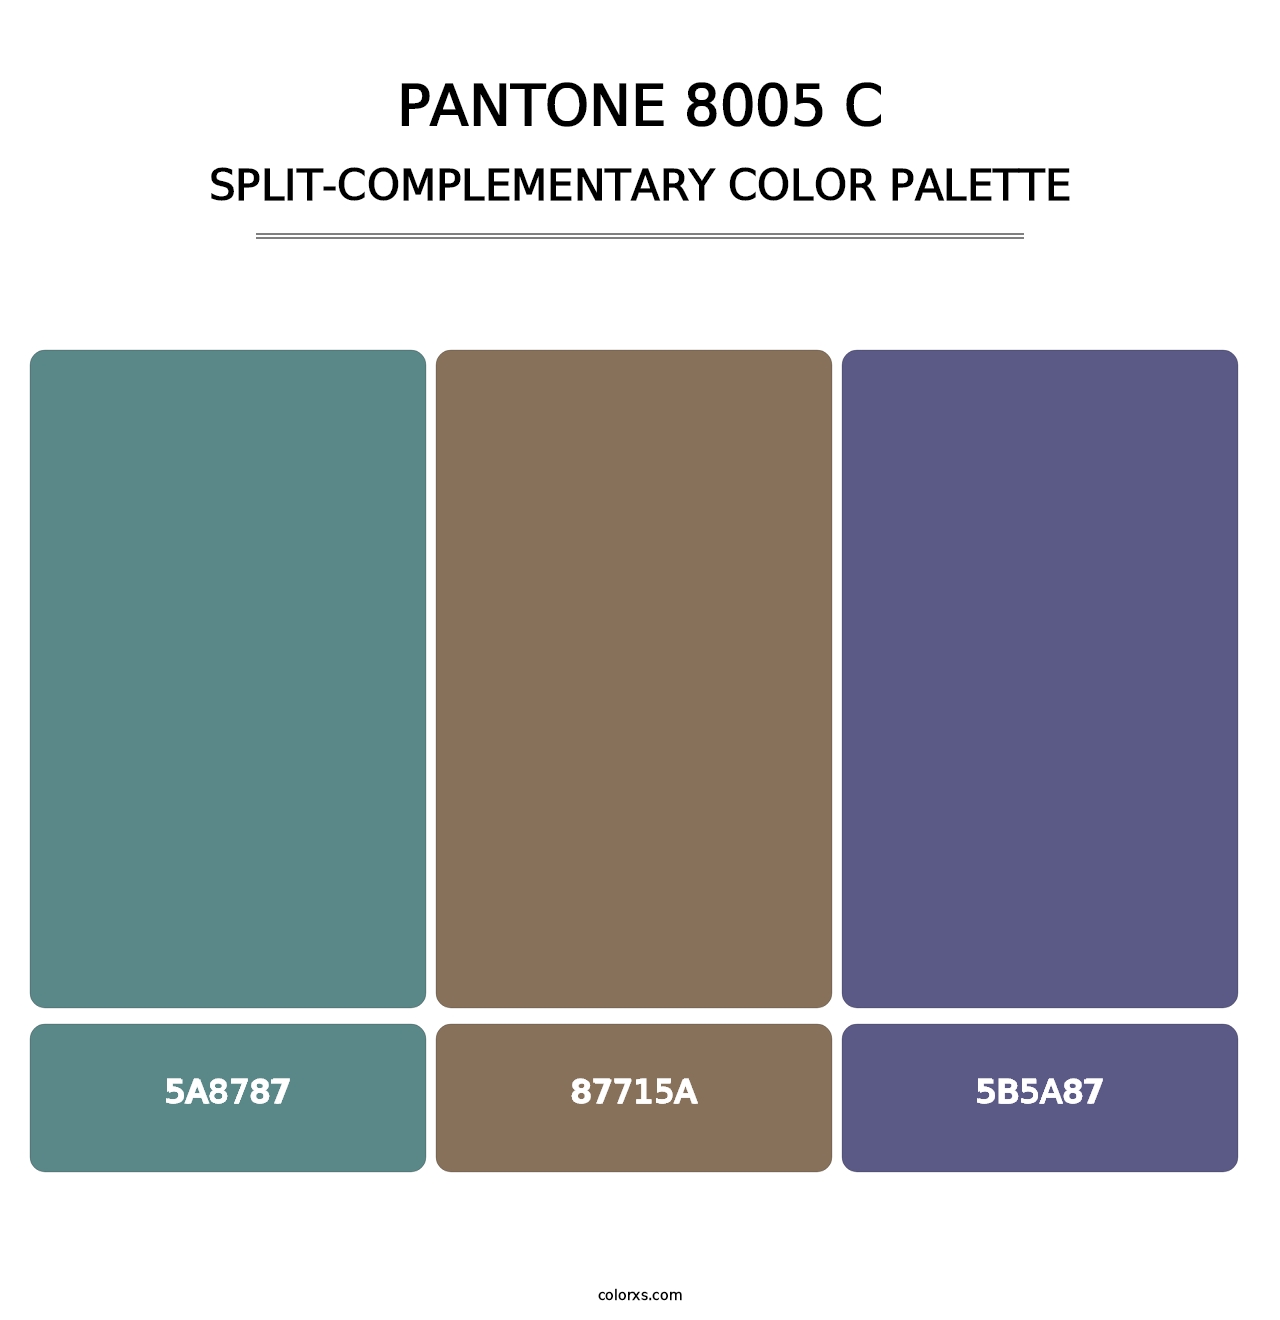 PANTONE 8005 C - Split-Complementary Color Palette